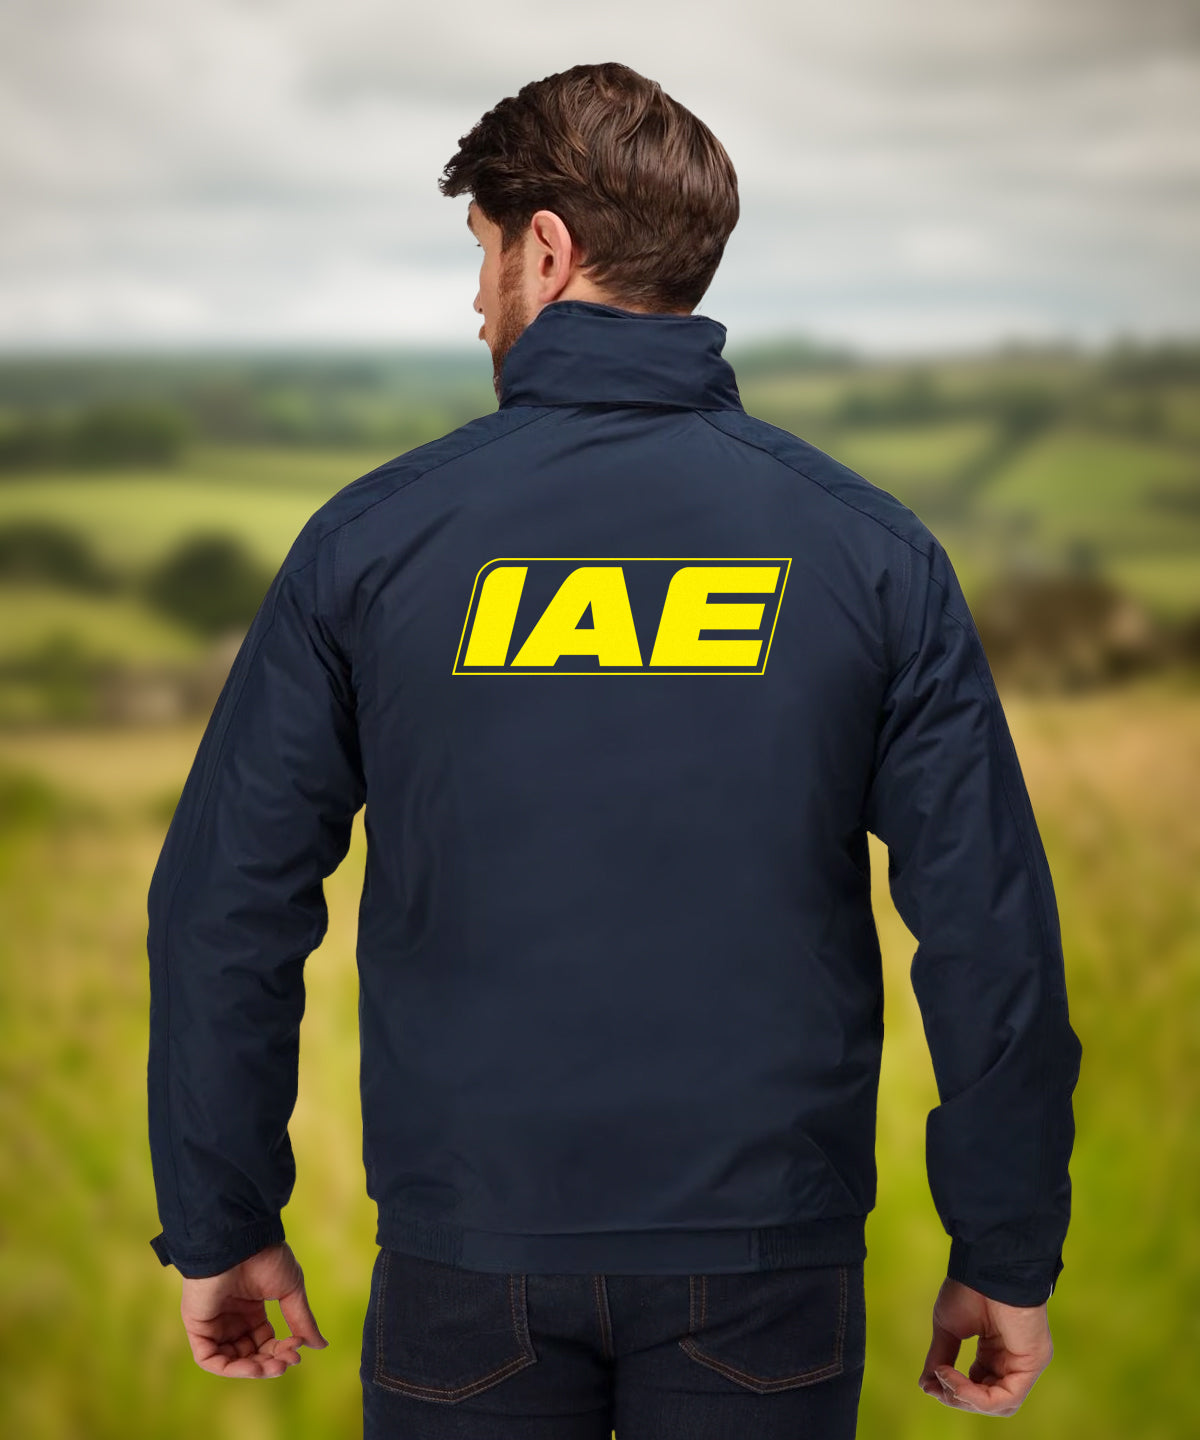 IAE Waterproof Coat